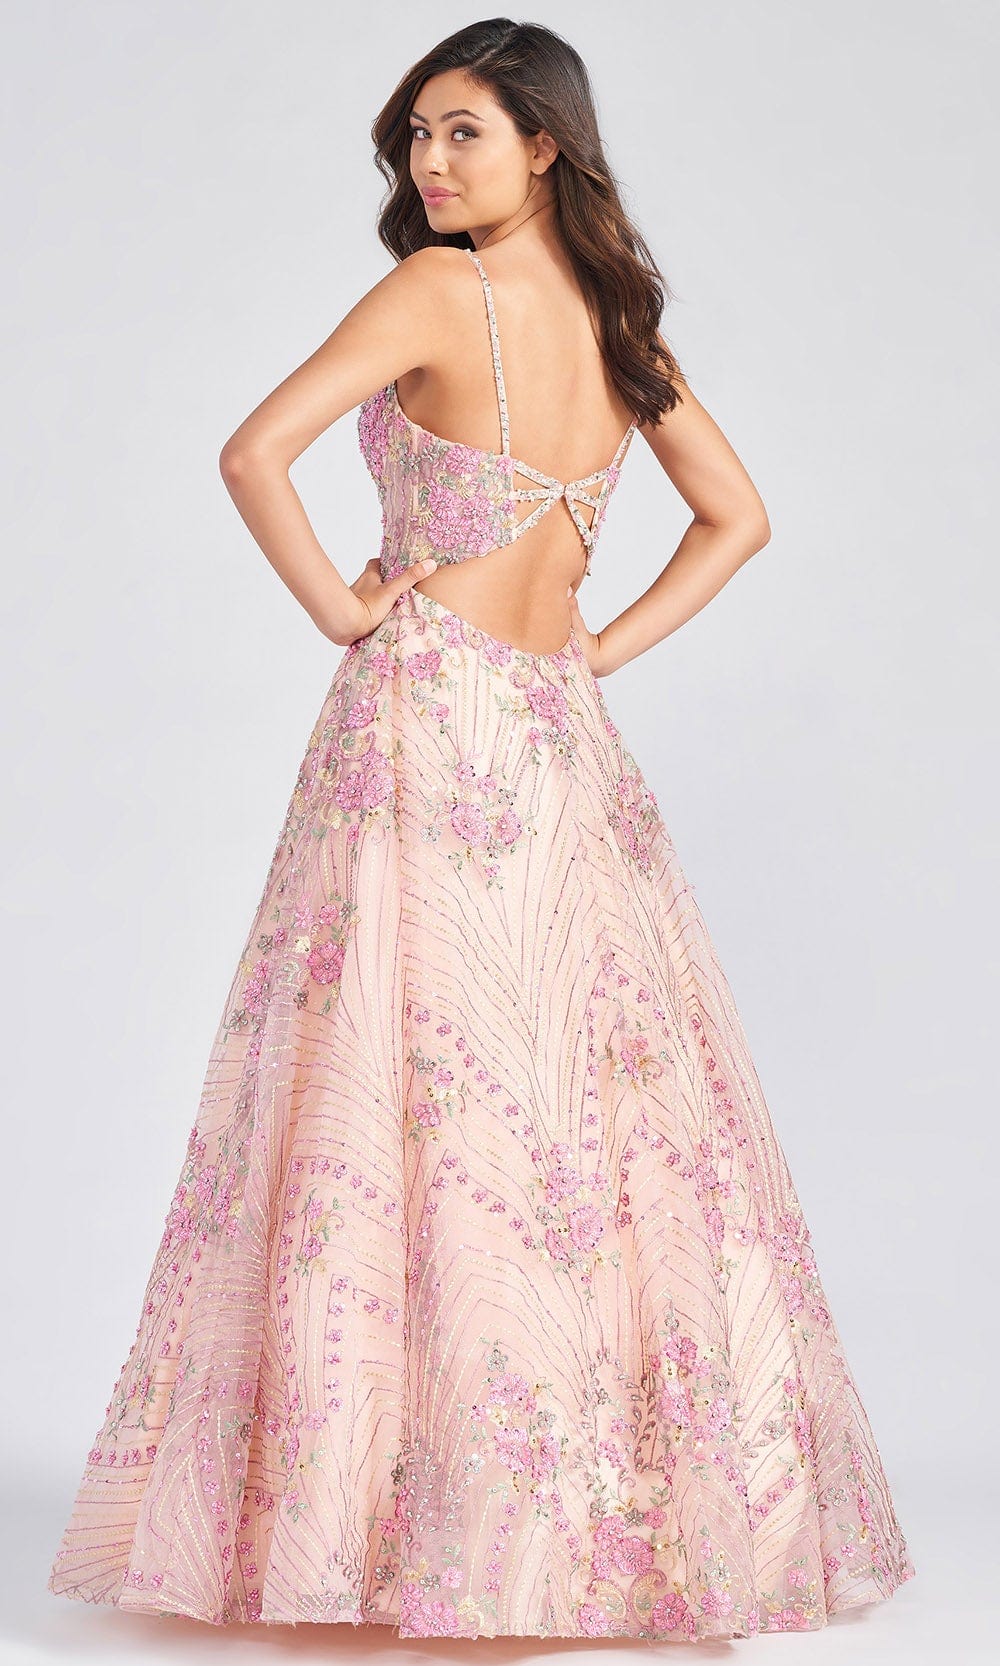 Colette For Mon Cheri CL12279 - Floral Lace Prom Dress Prom Dresses